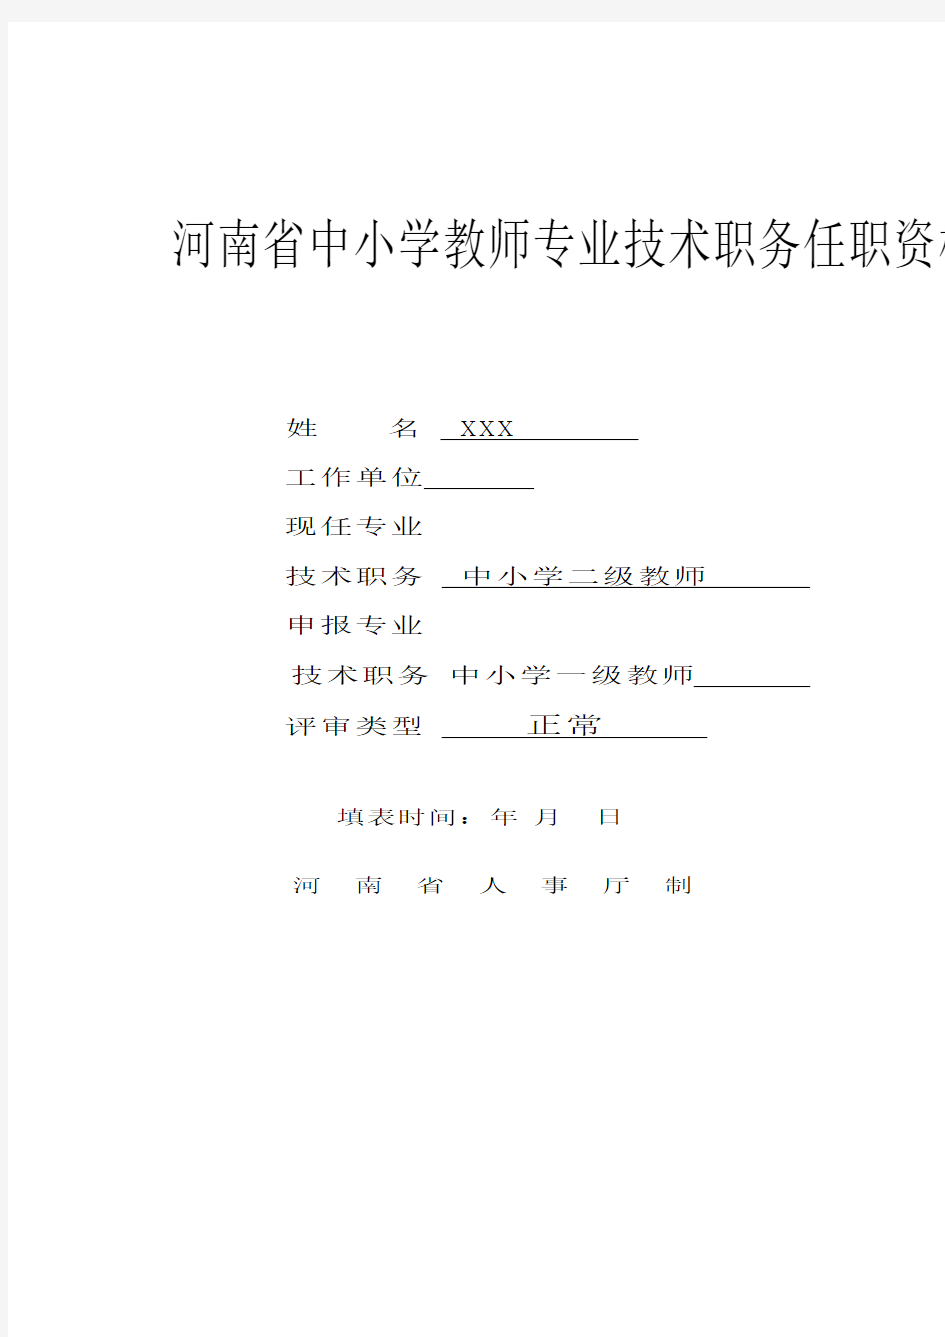 河南省中小学教师专业技术职务任职资格评审表